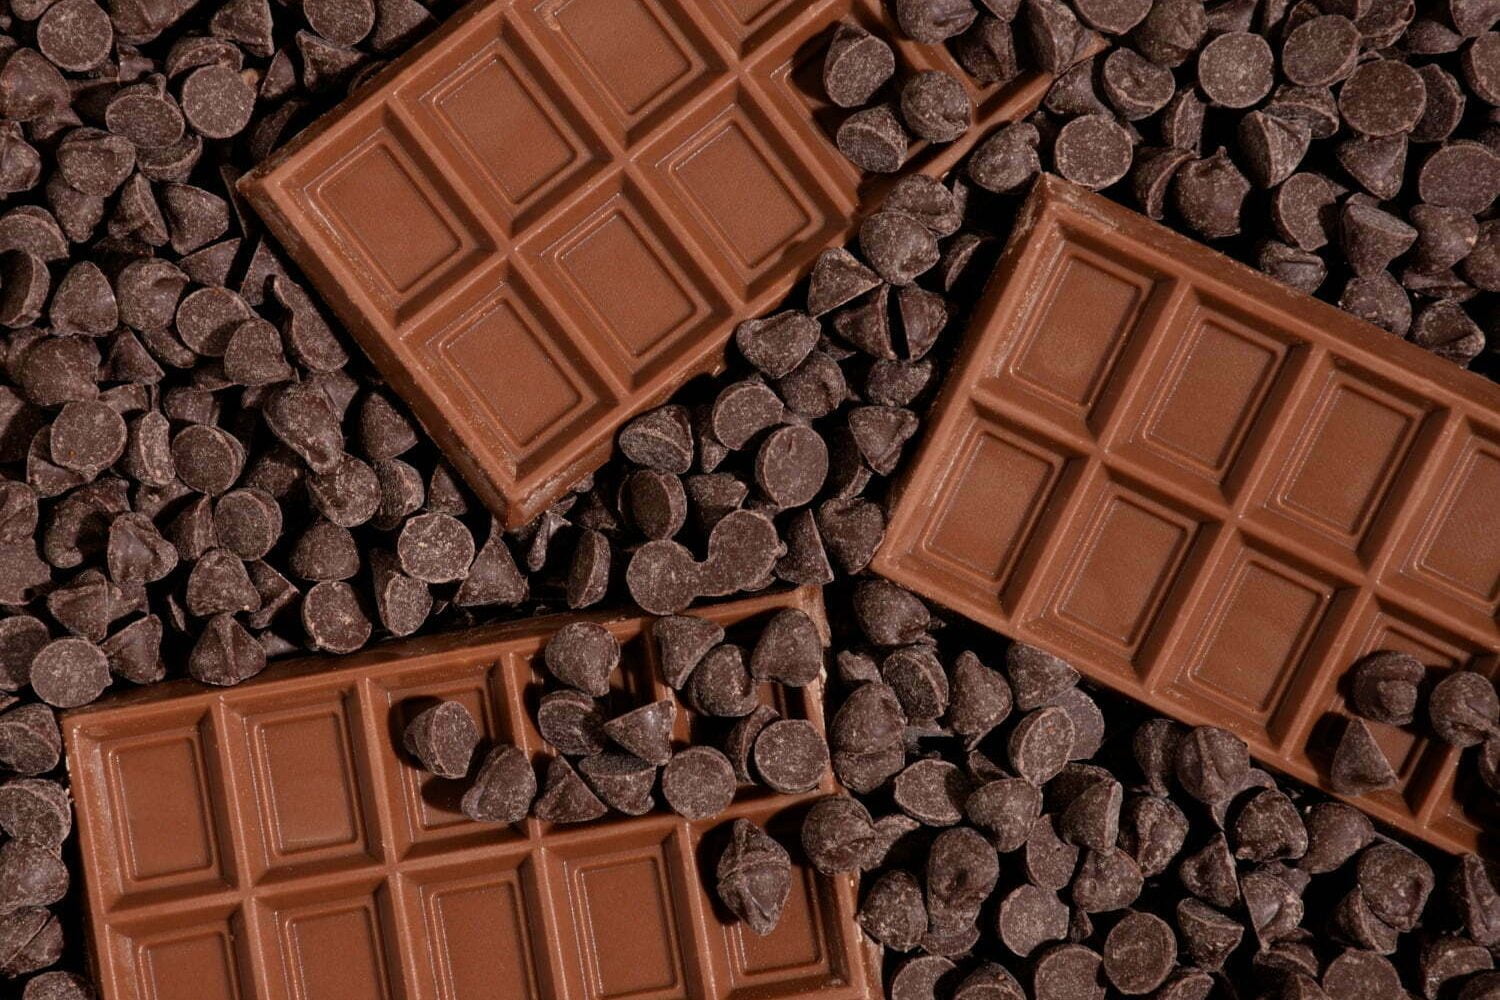 barras de chocolate y chispas de chocolate que es bueno para la salud del corazón